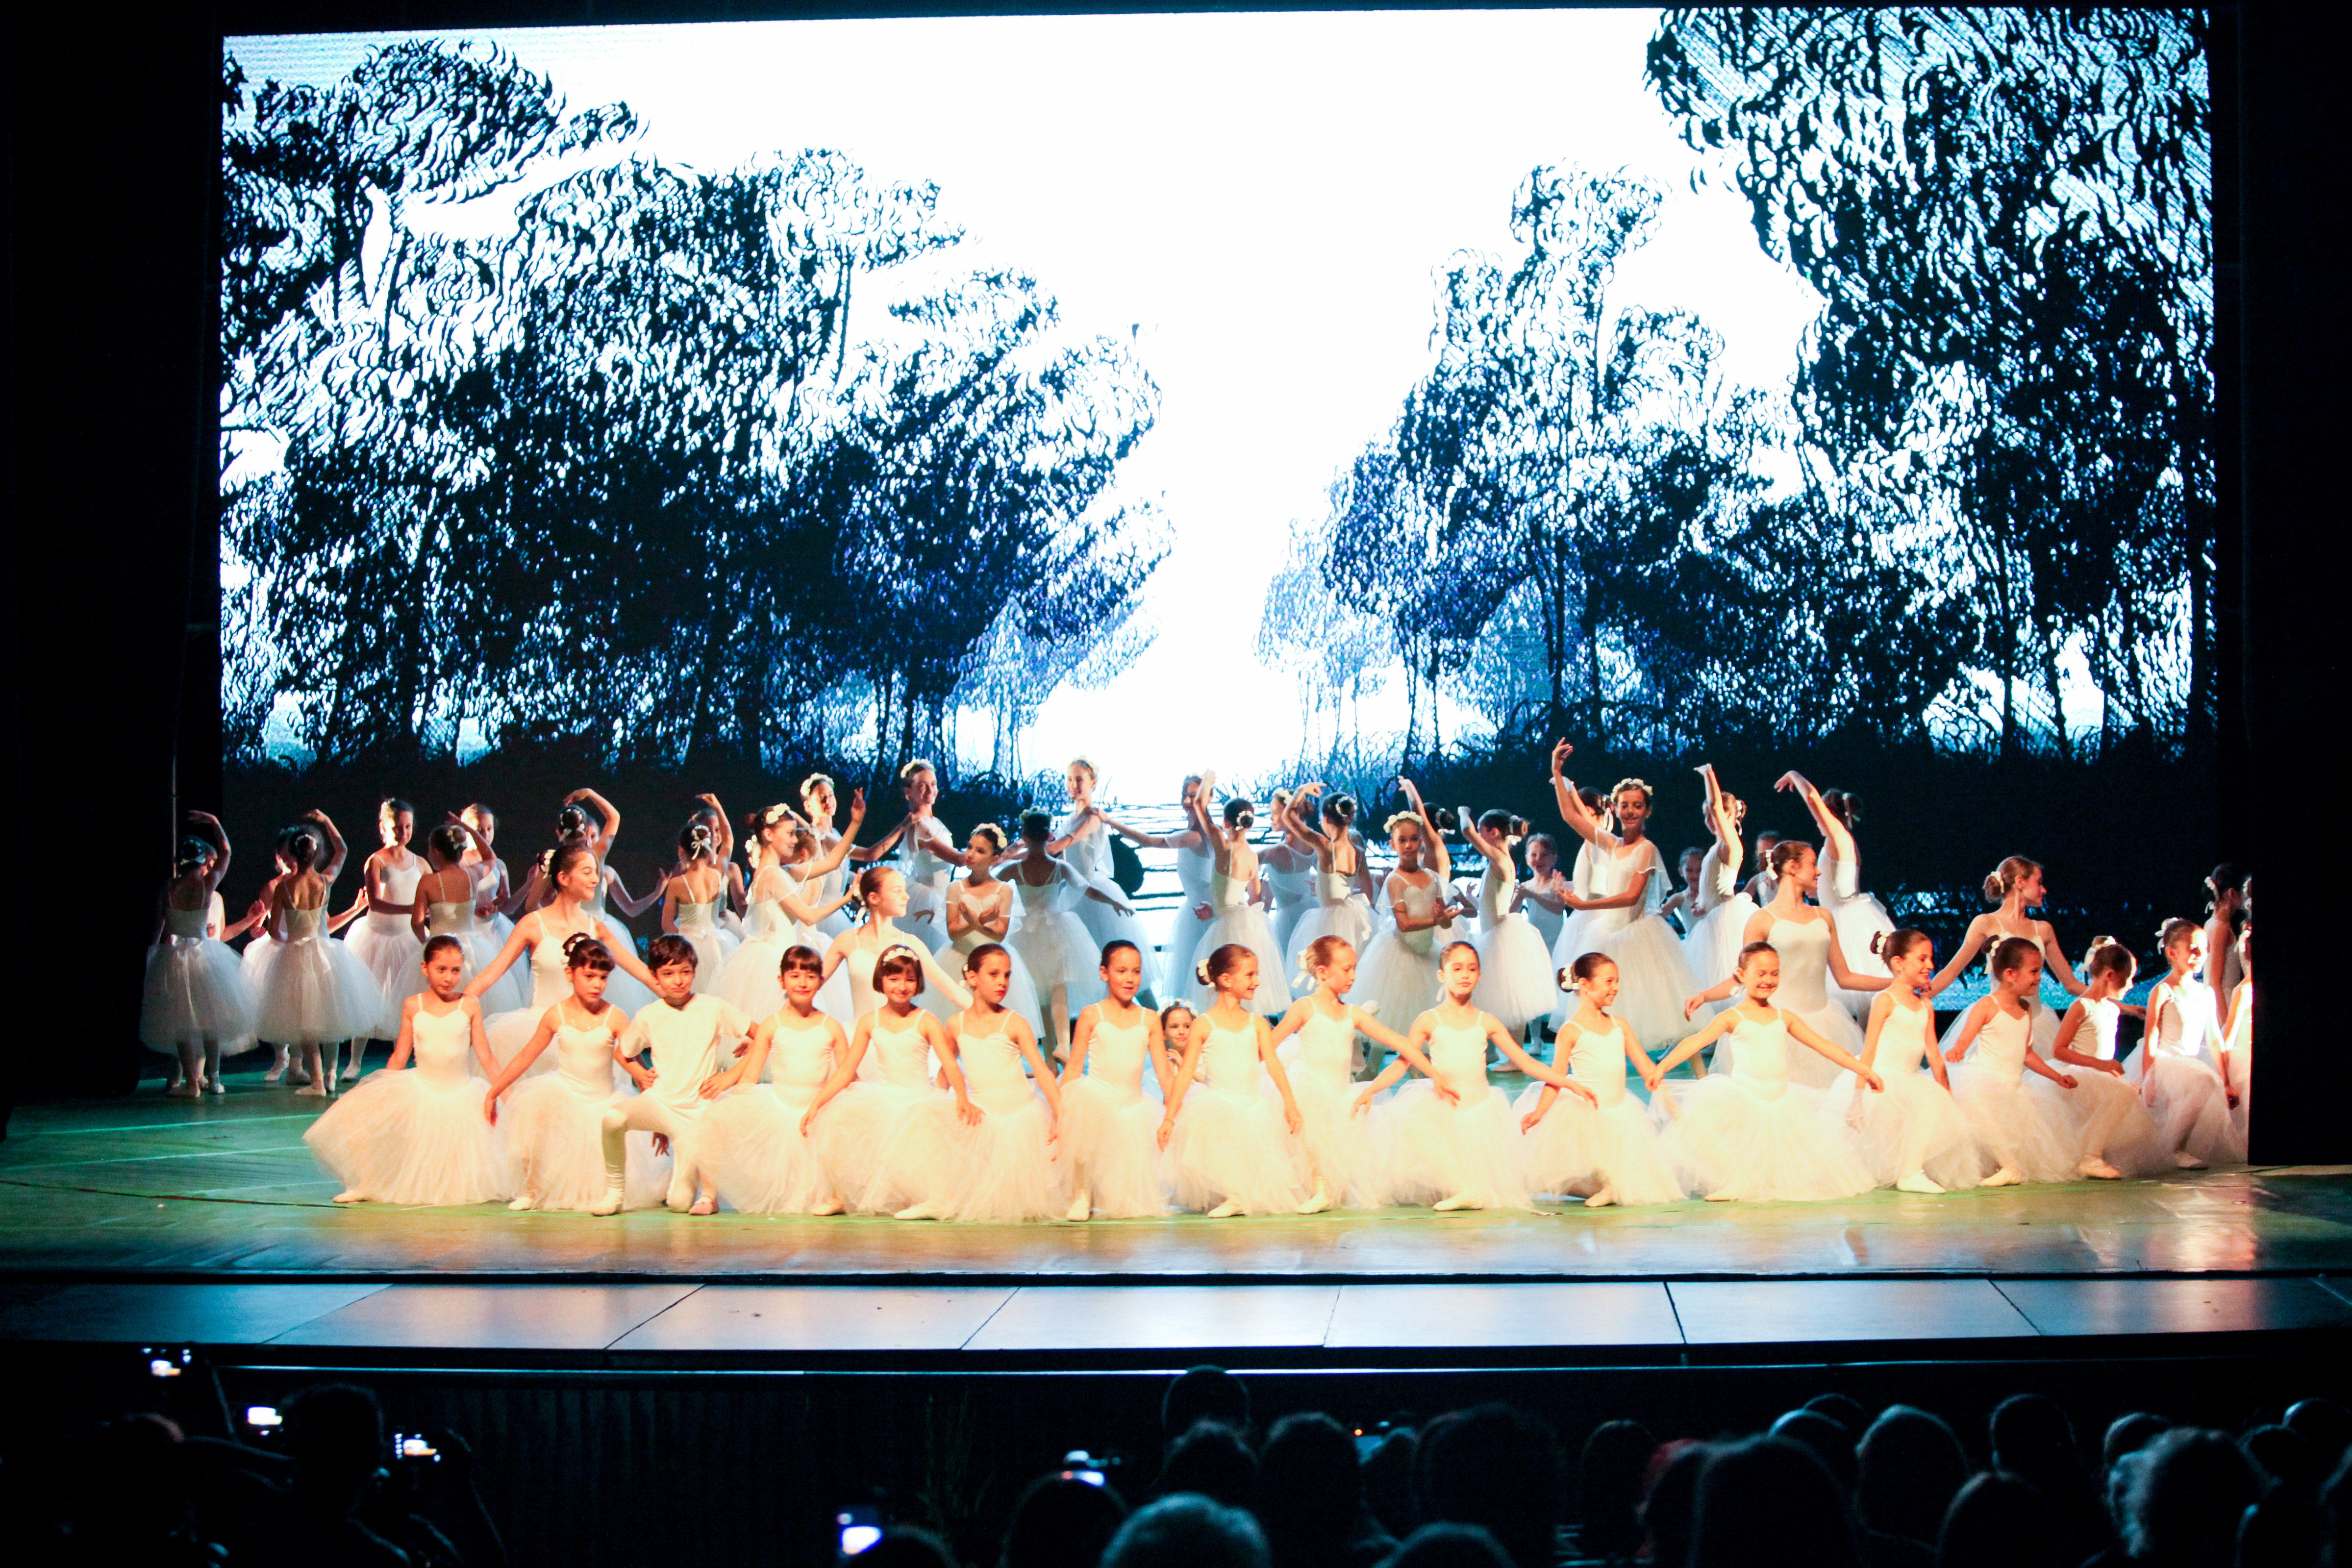 Ballet Art inițiază Campania ”Educație prin muzică și dans”